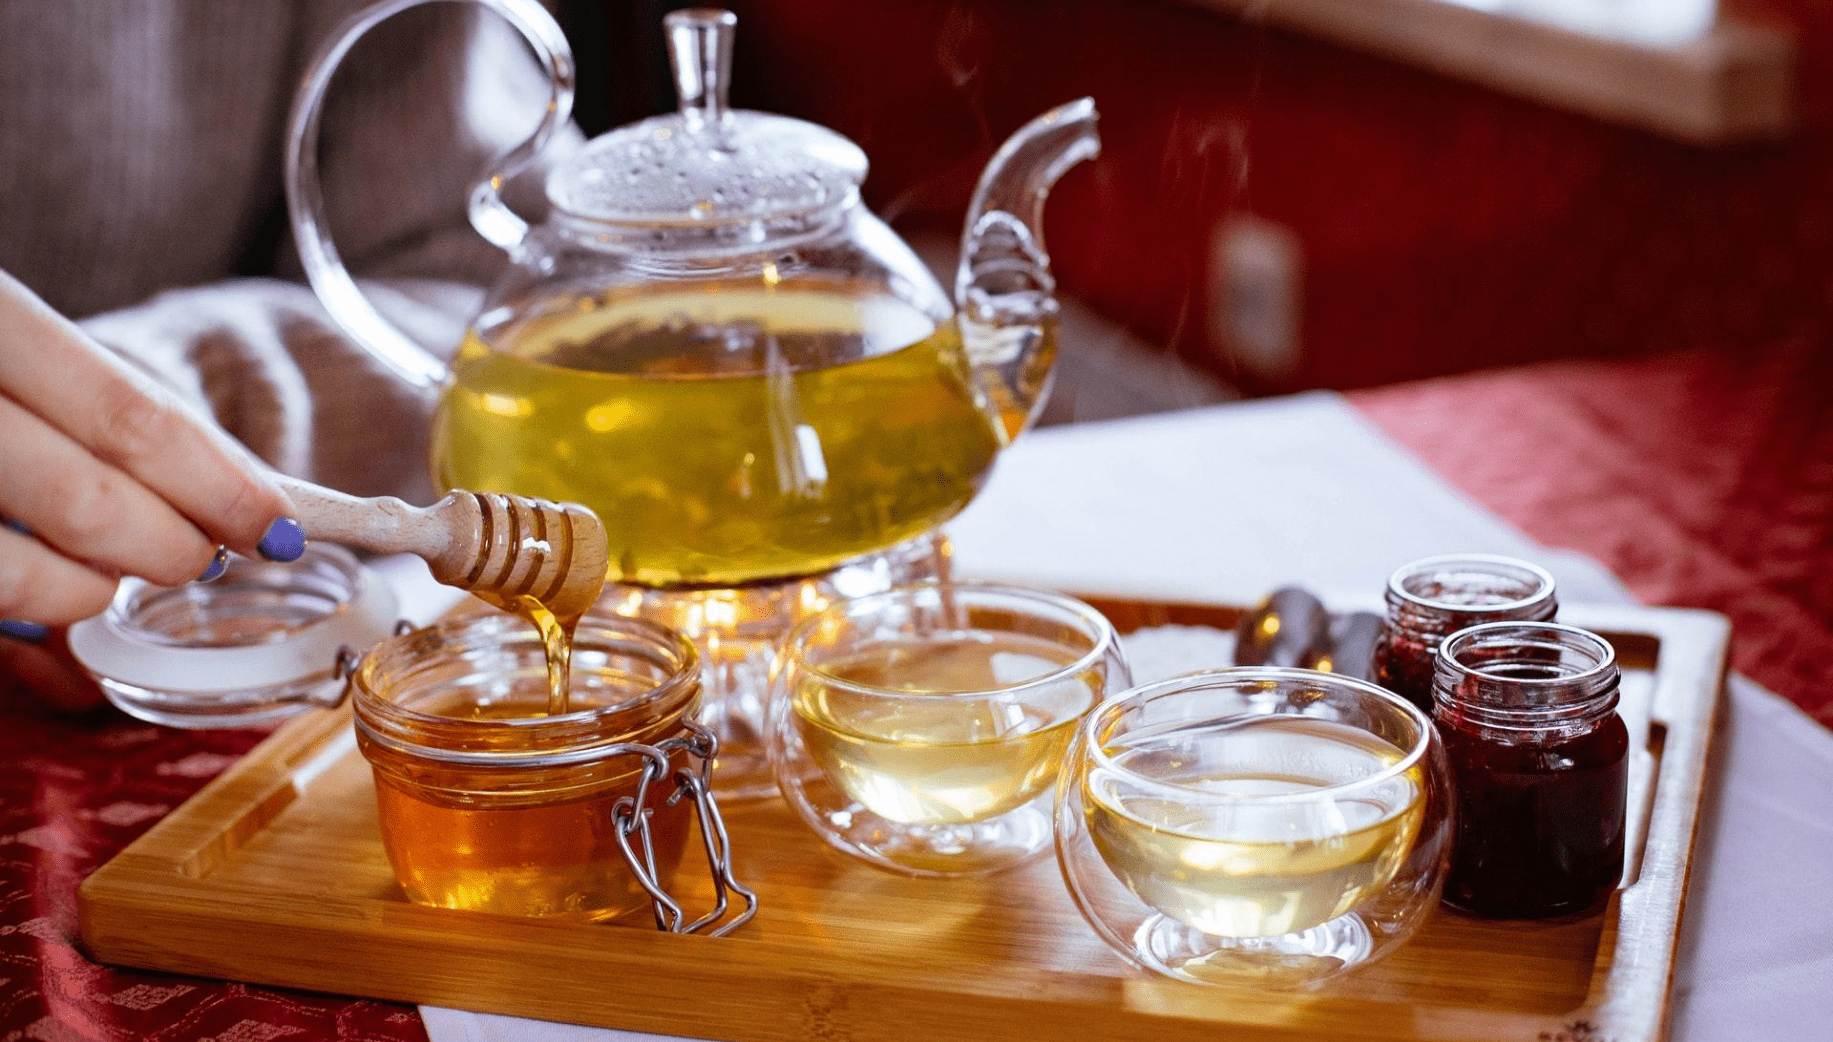 Tea and honey